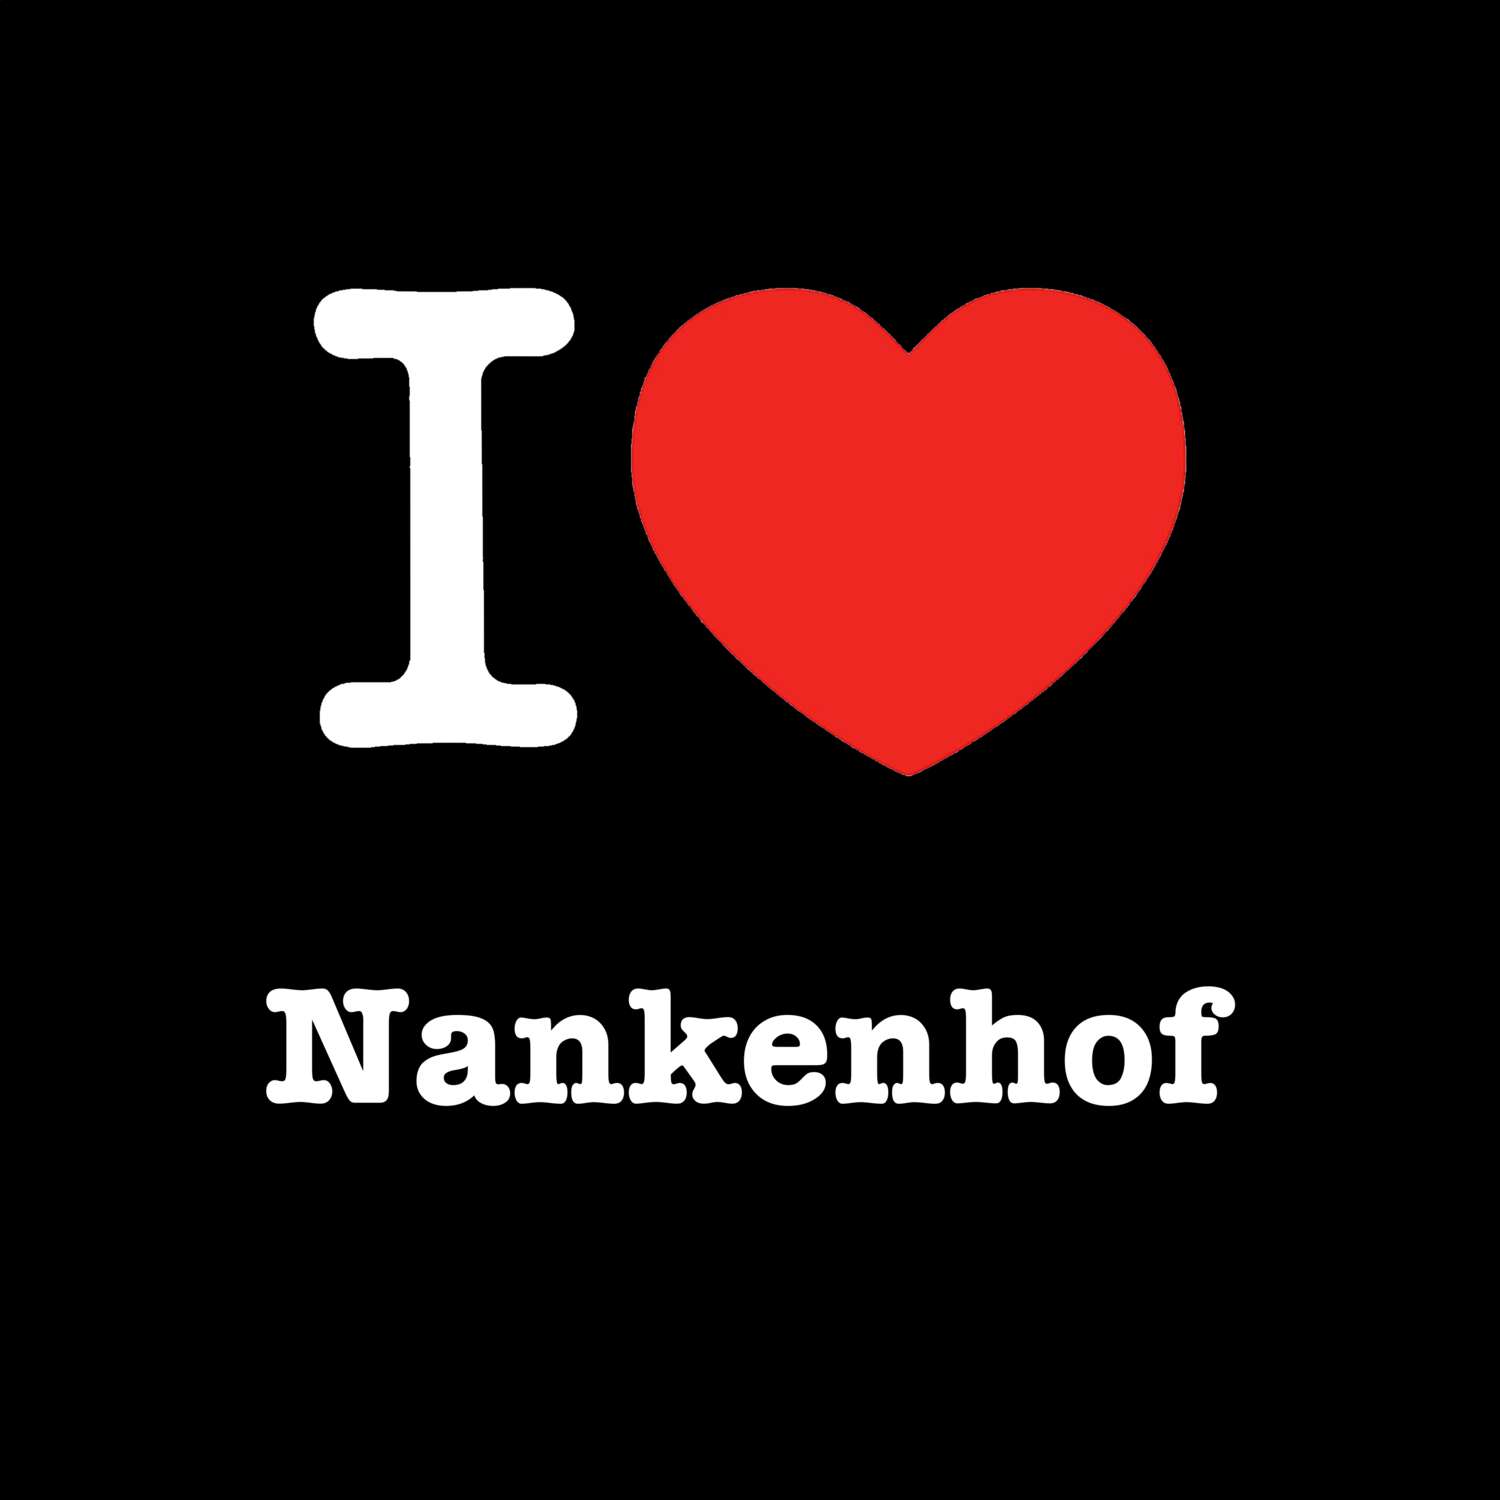 Nankenhof T-Shirt »I love«